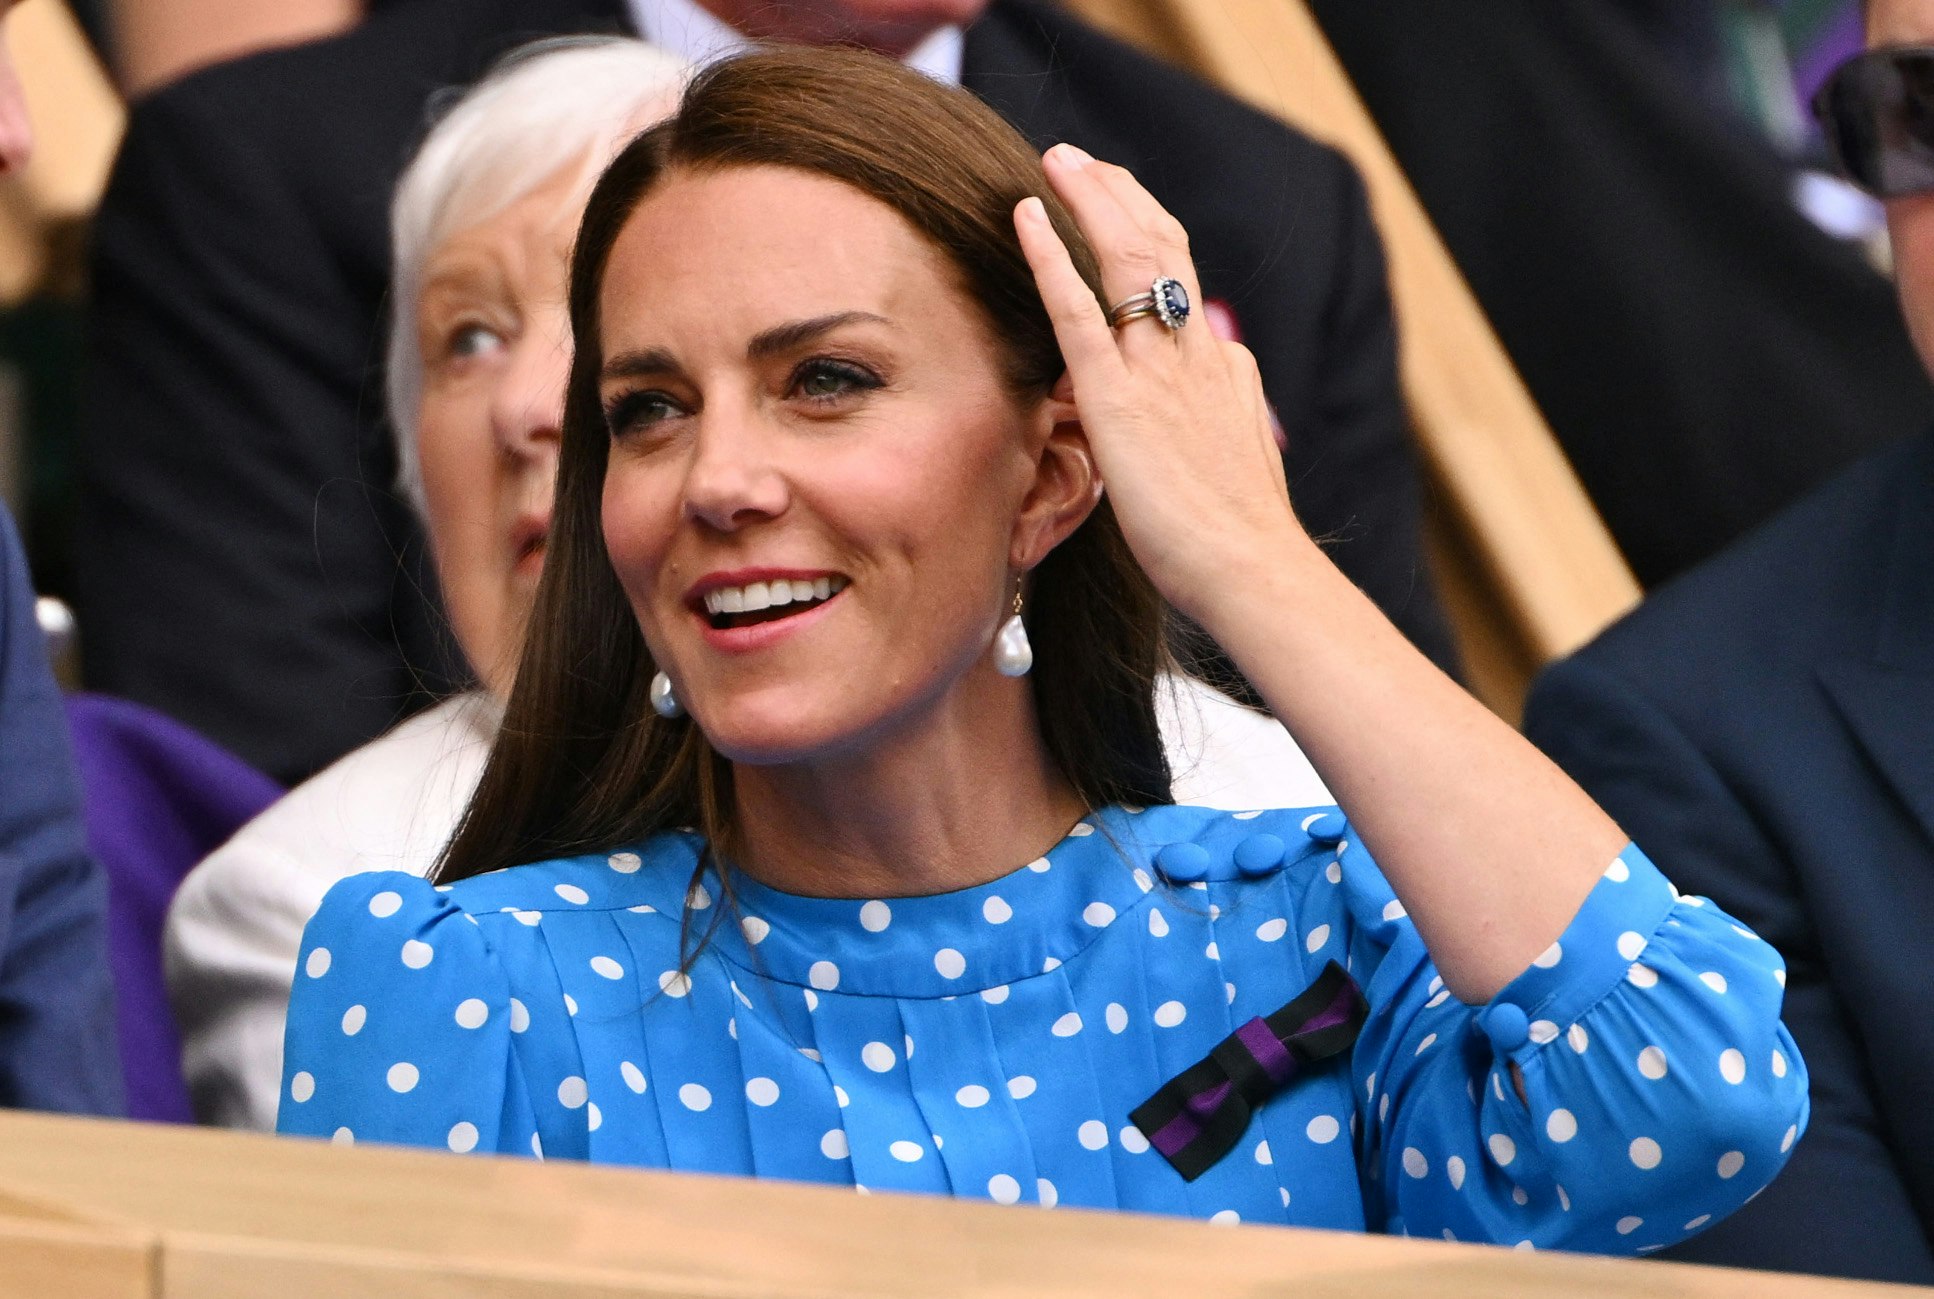 Kate Middleton, Princess Beatrice Wearing Polka Dot Styles: Shop Similar